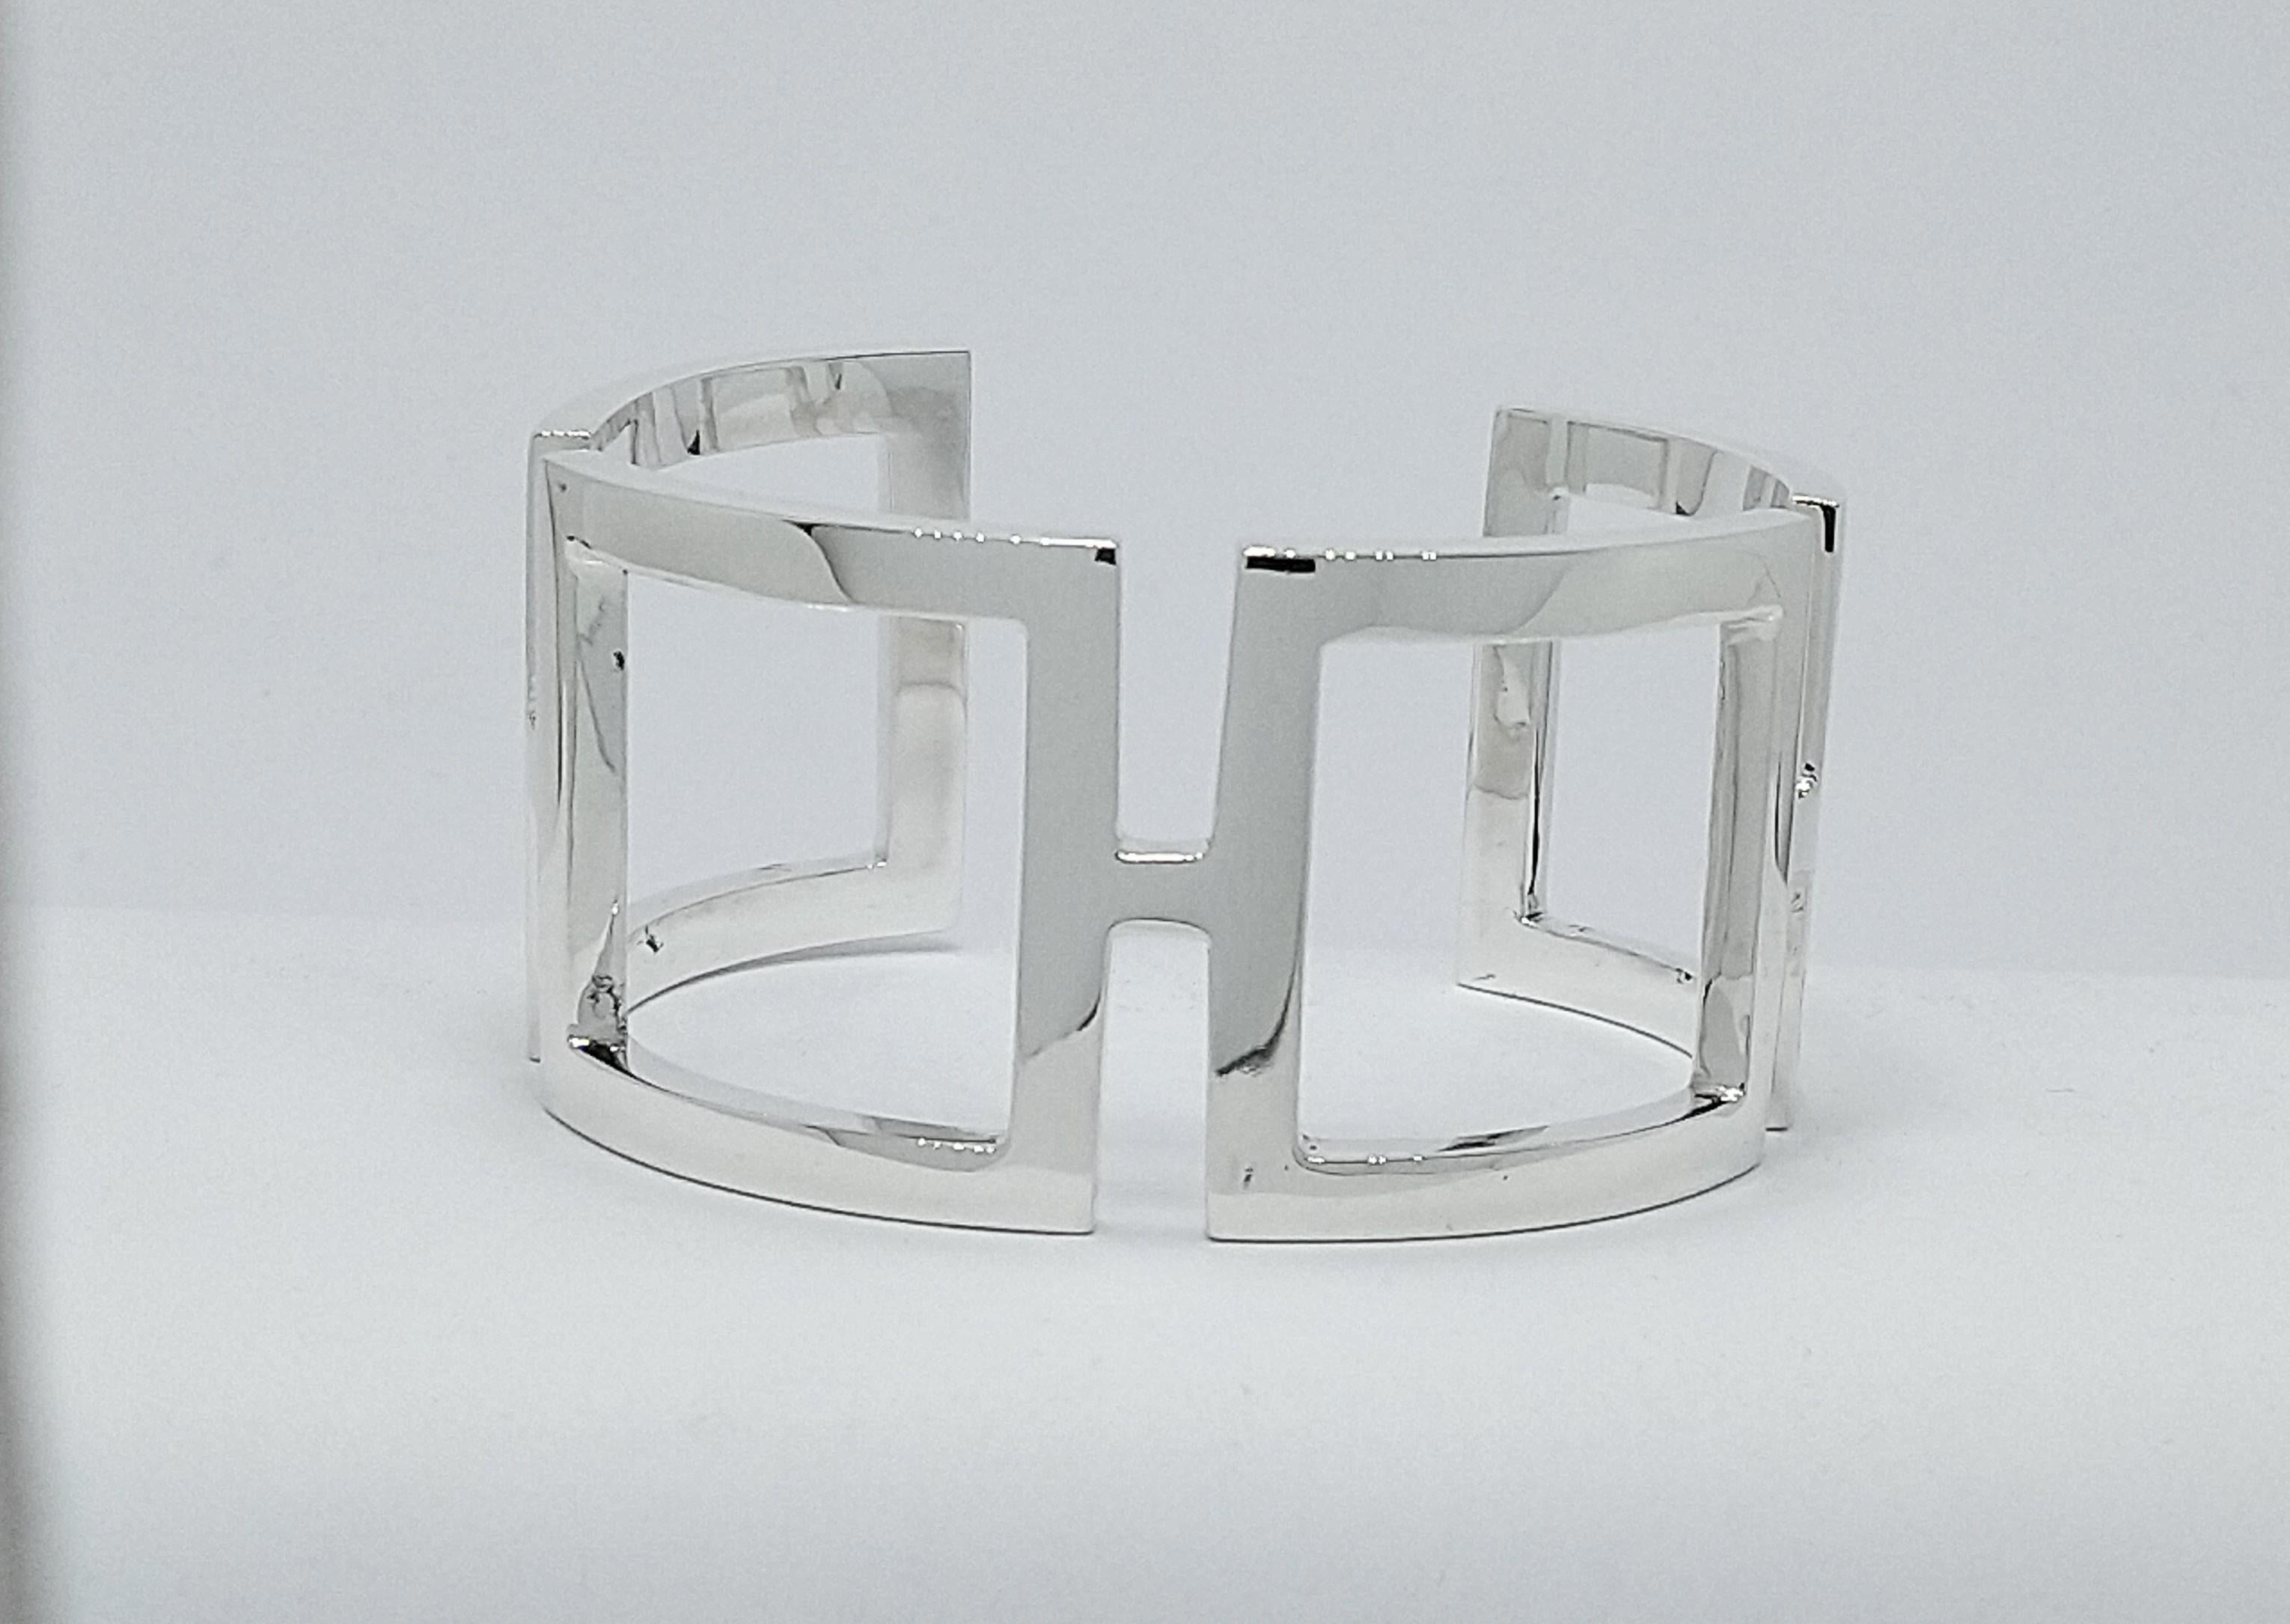 Tiffany Designer , Thomas Kurilla  Sterling Silber Rechteckiges Manschettenarmband , 3 x 1,5 mm dick x  mm 31,25 breit. Dies ist einer meiner frühen Entwürfe.  Ich benutzte das einfache Rechteck in einem gebogenen Zustand für den ultimativen